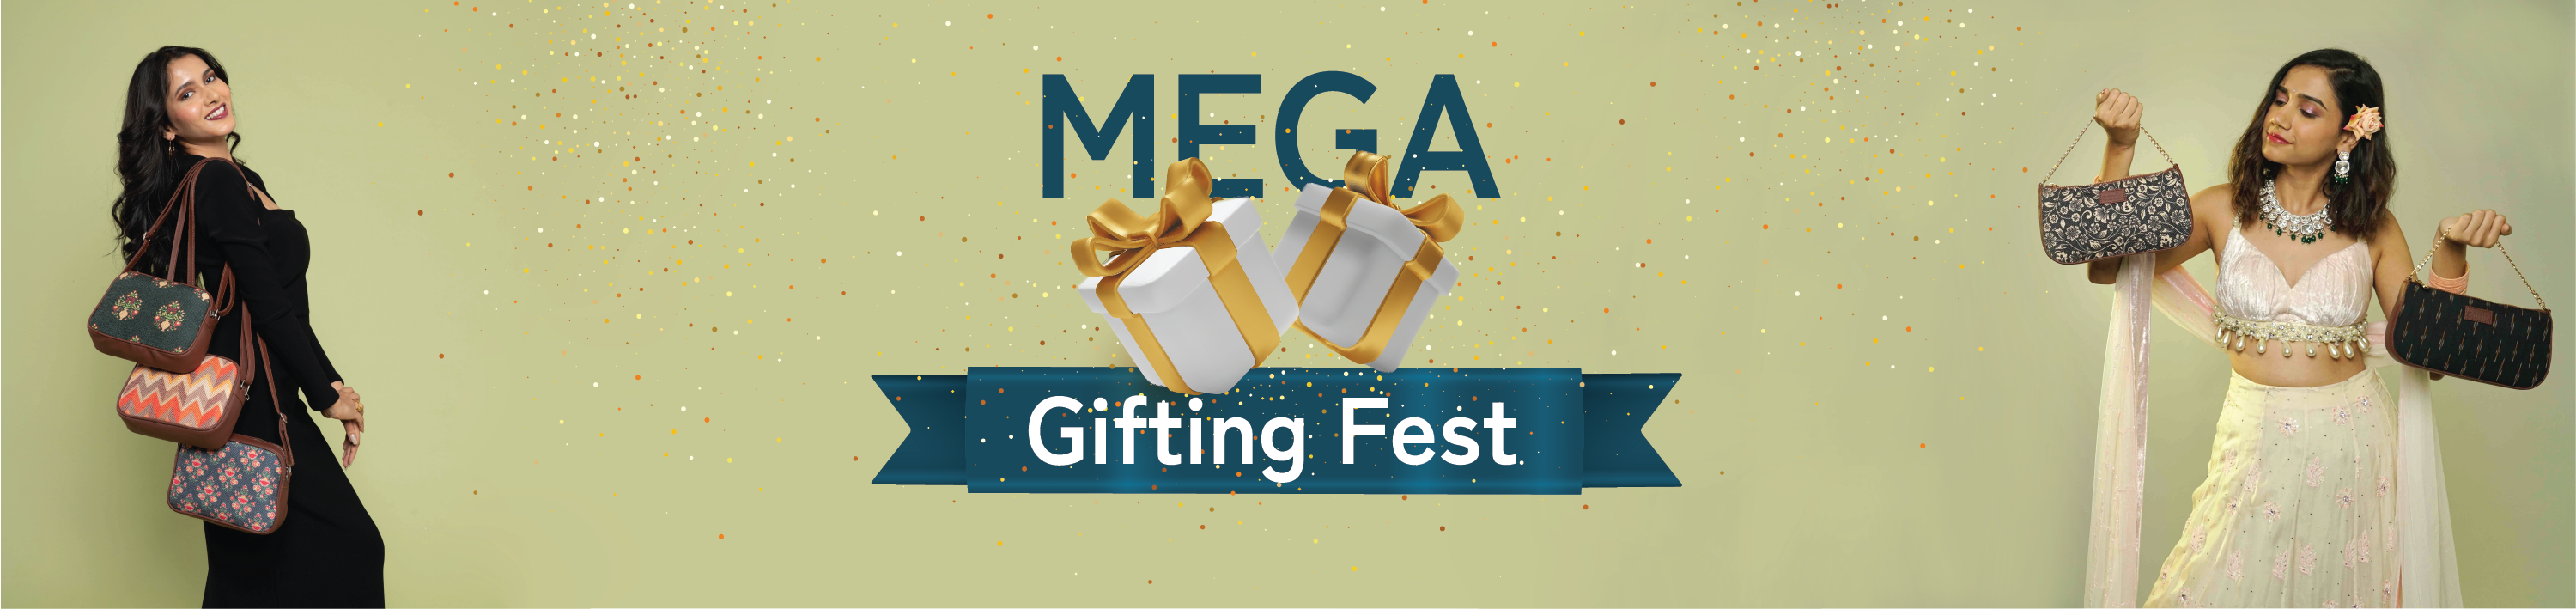 Mega Gifting Fest